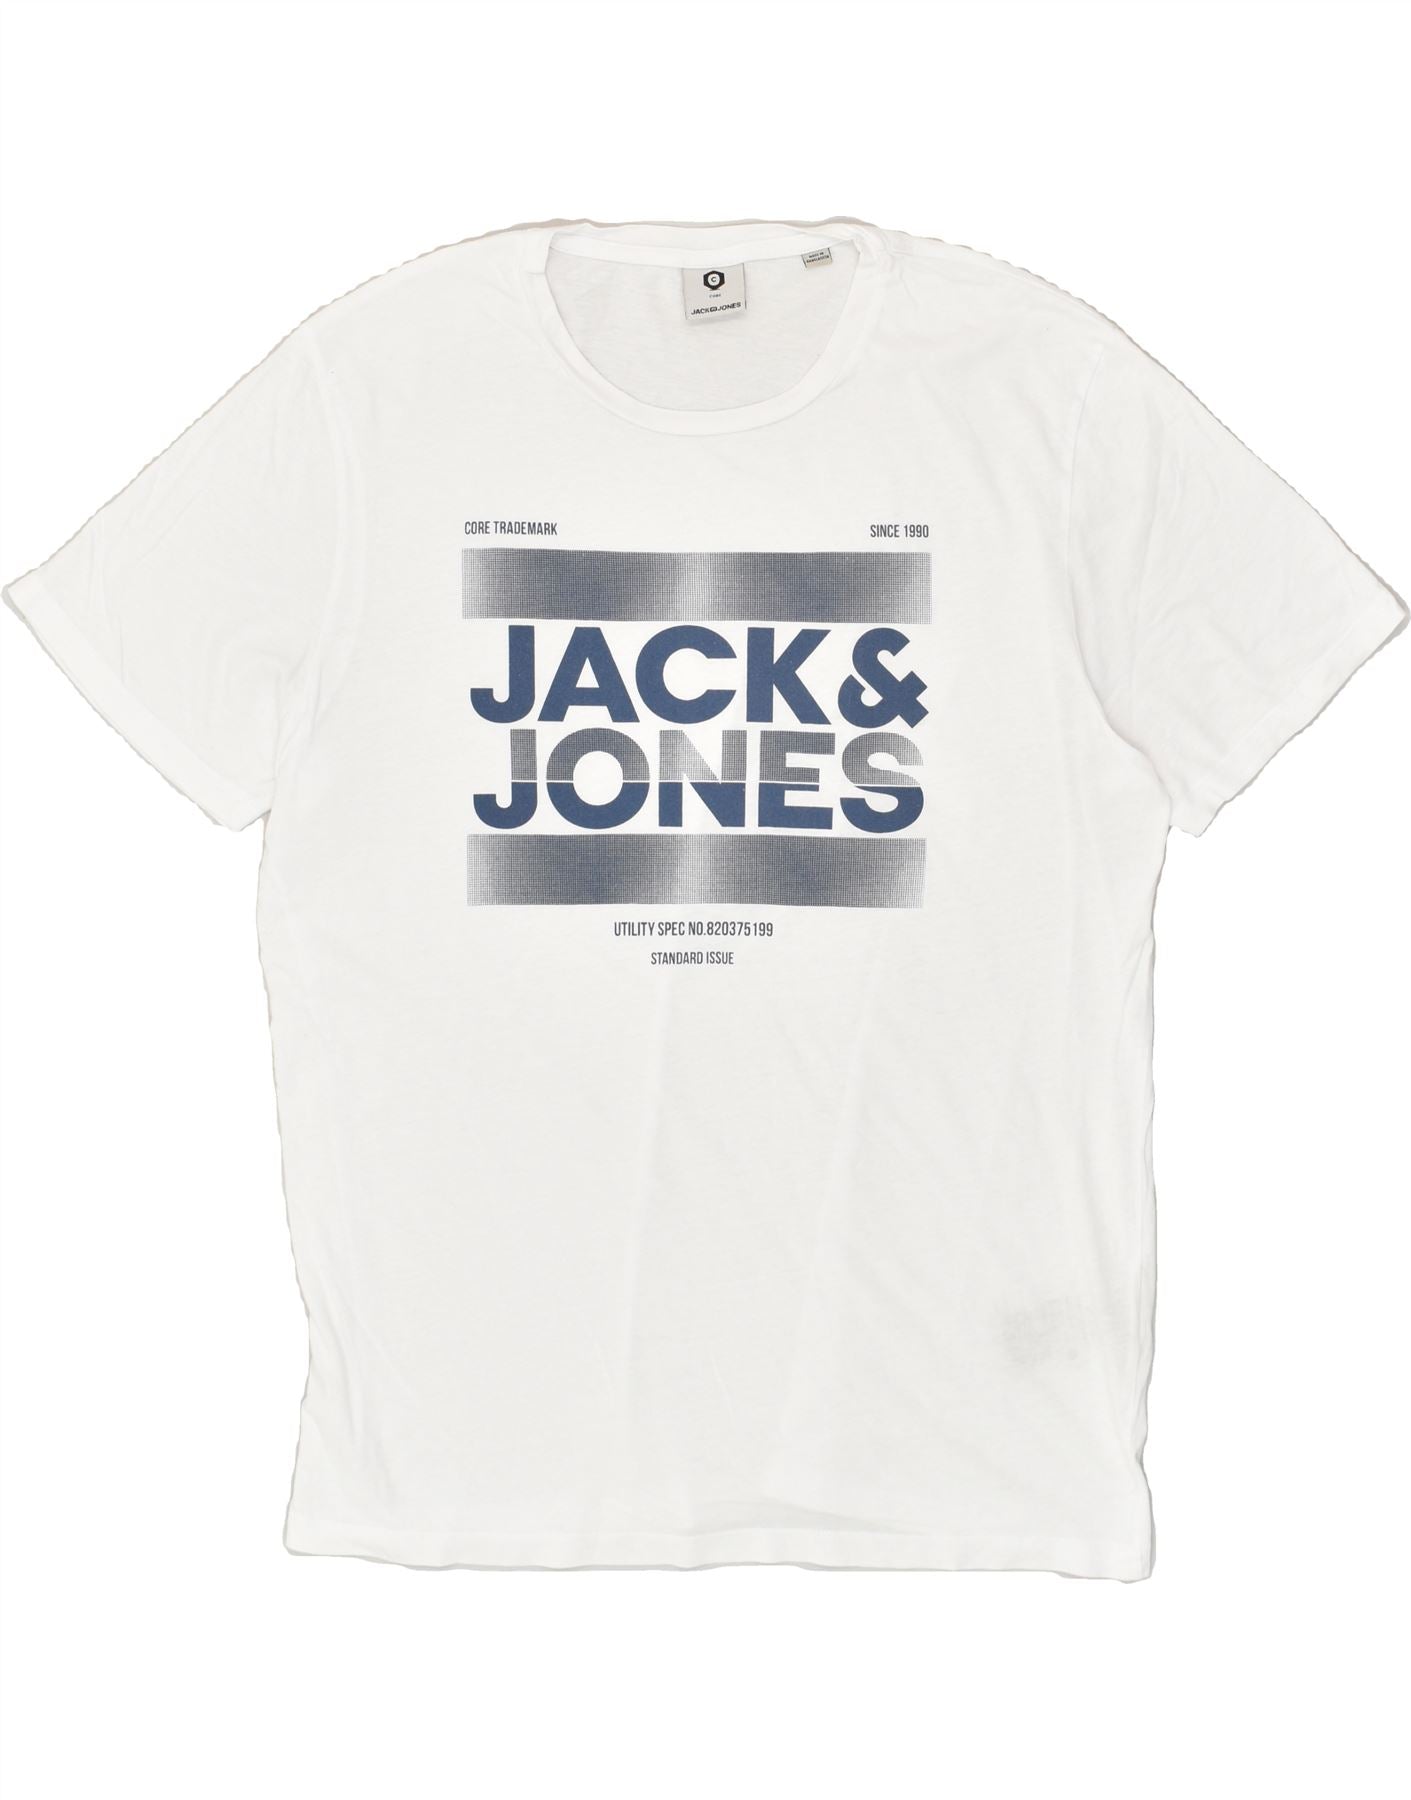 JACK & JONES Mens Graphic T-Shirt Top 2XL White Cotton